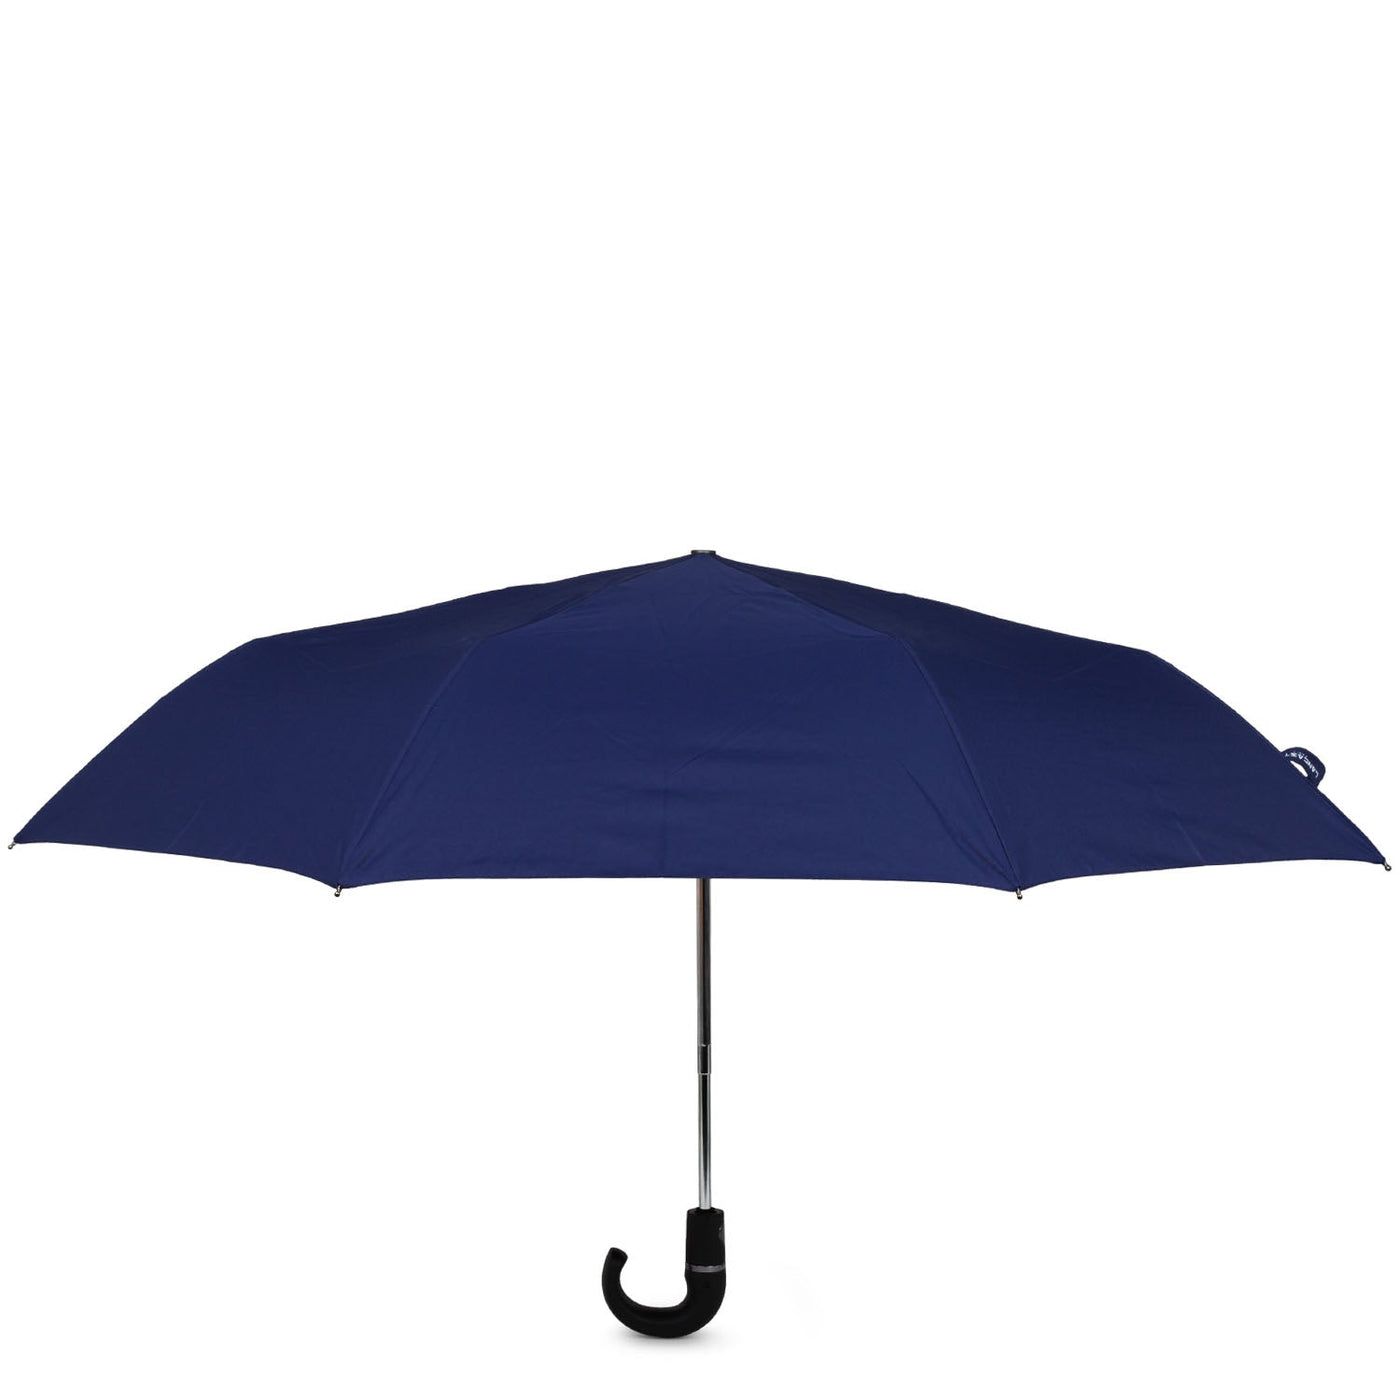 umbrella - accessoires parapluies #couleur_bleu-fonc